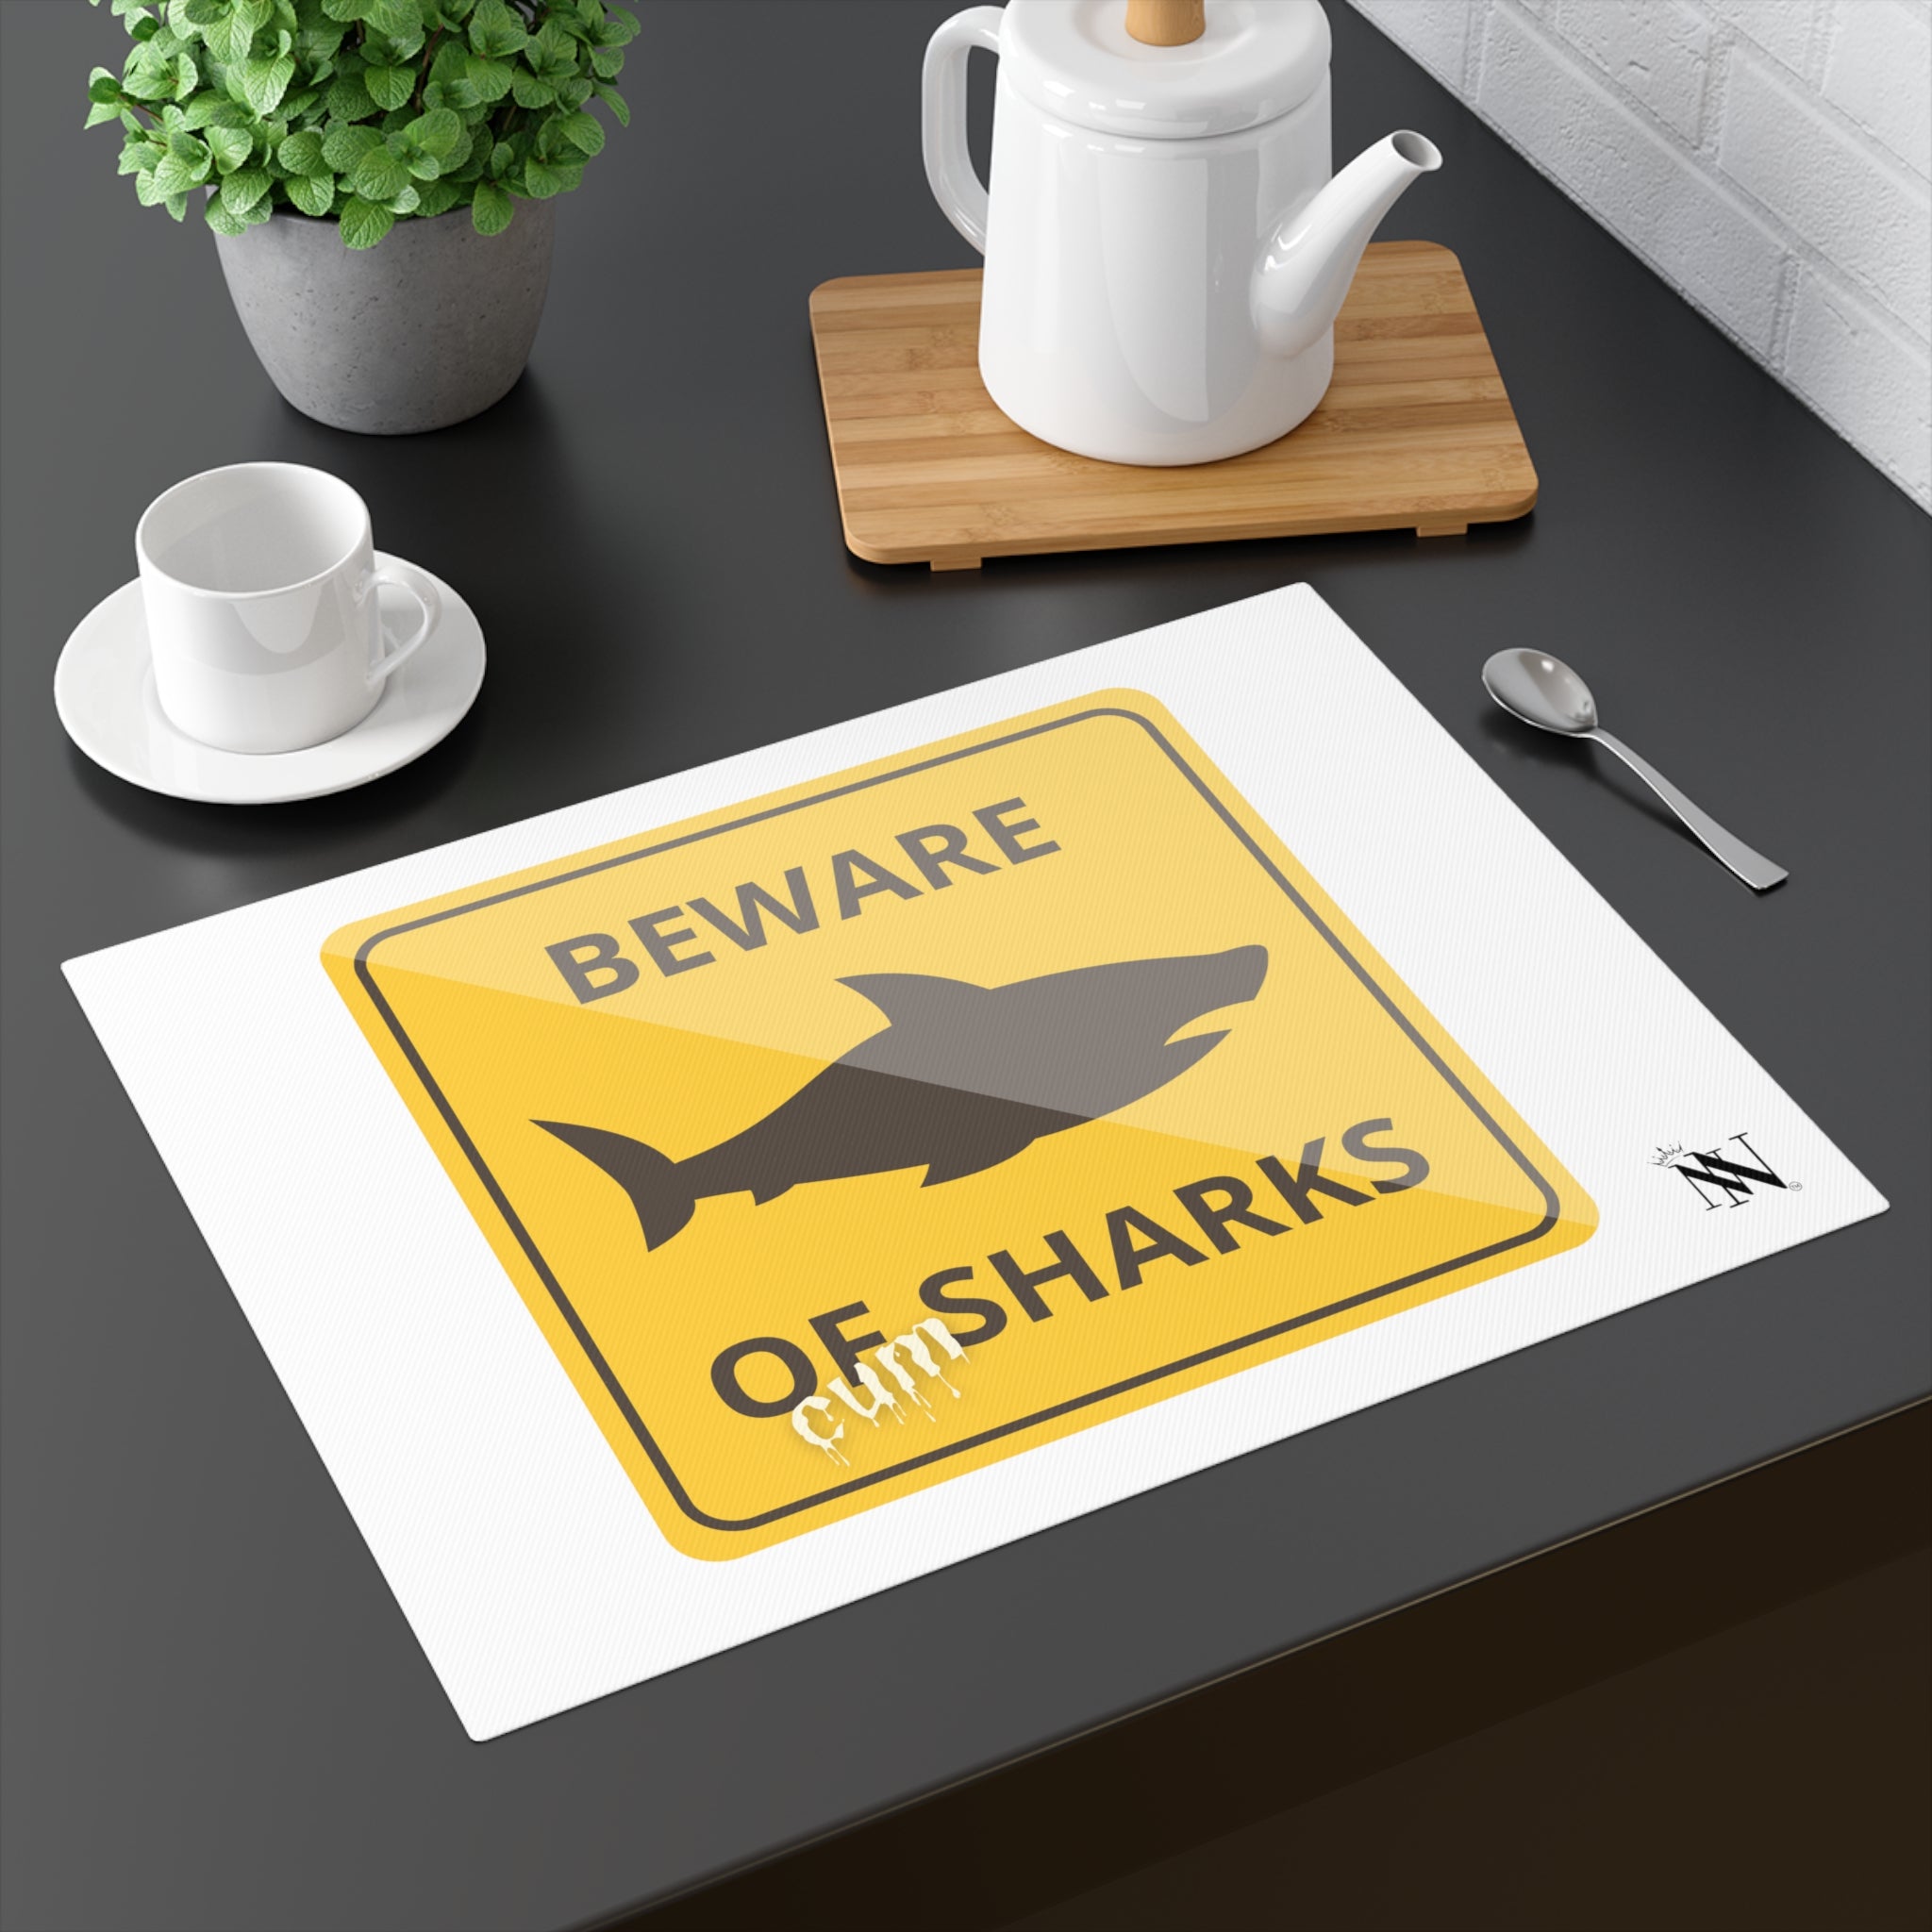 Beware of cum sharks toys mat